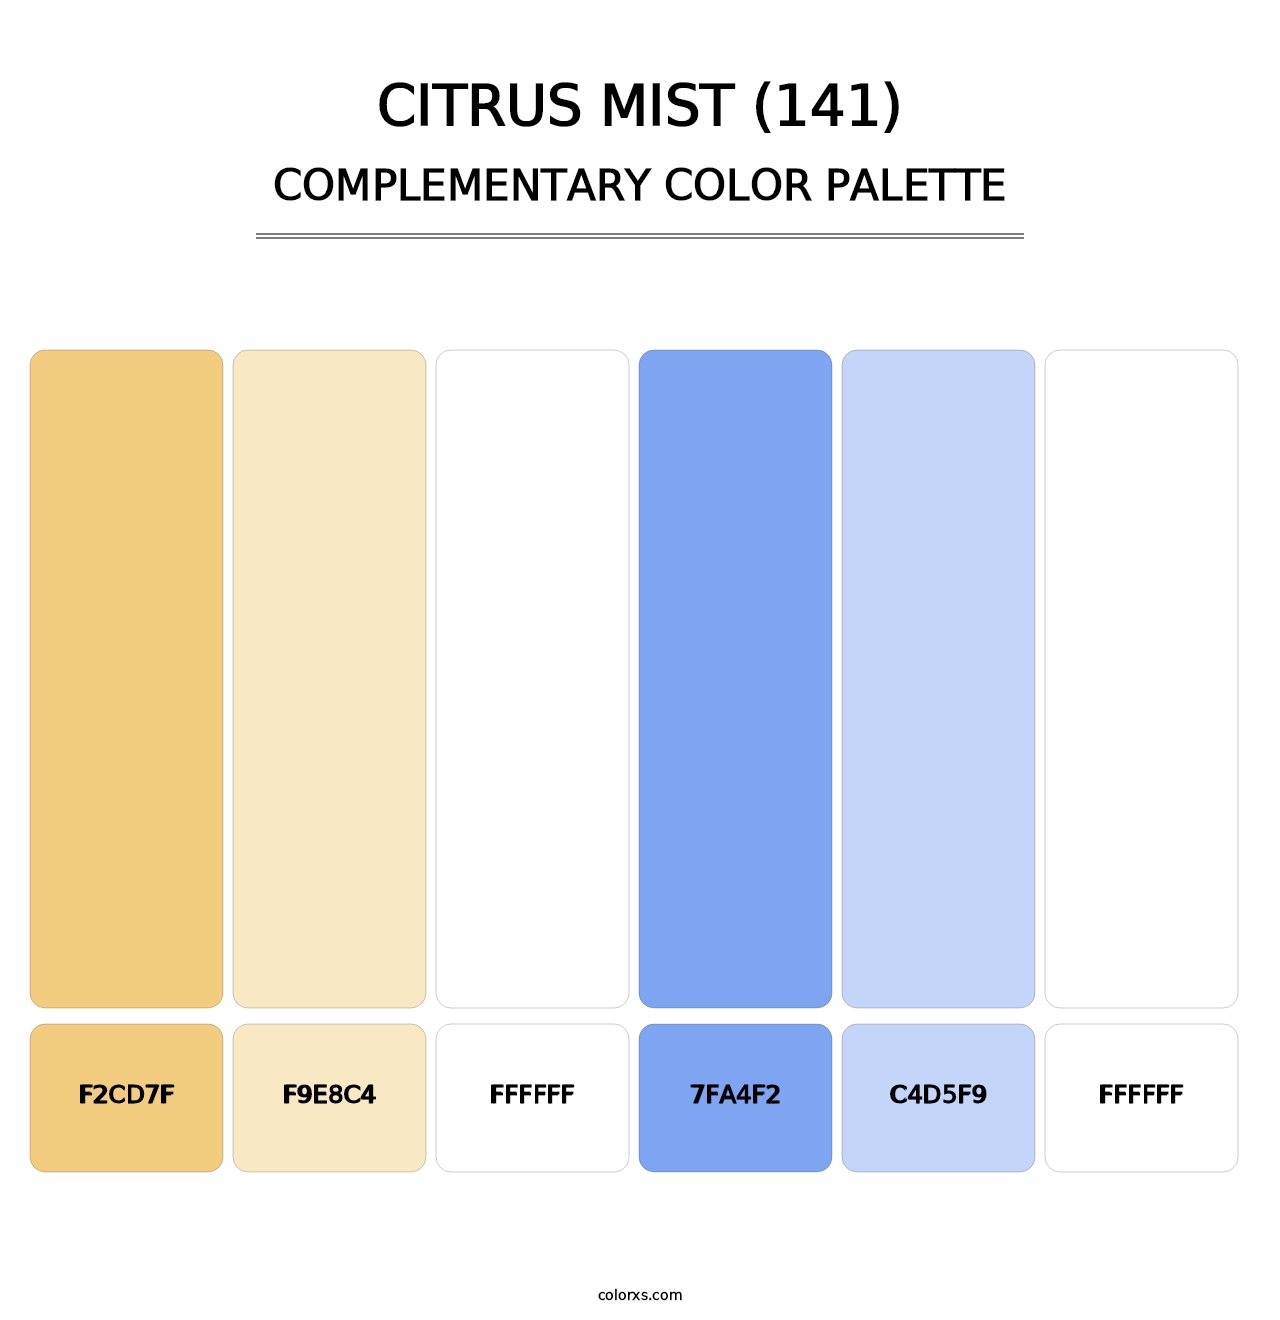 Citrus Mist (141) - Complementary Color Palette